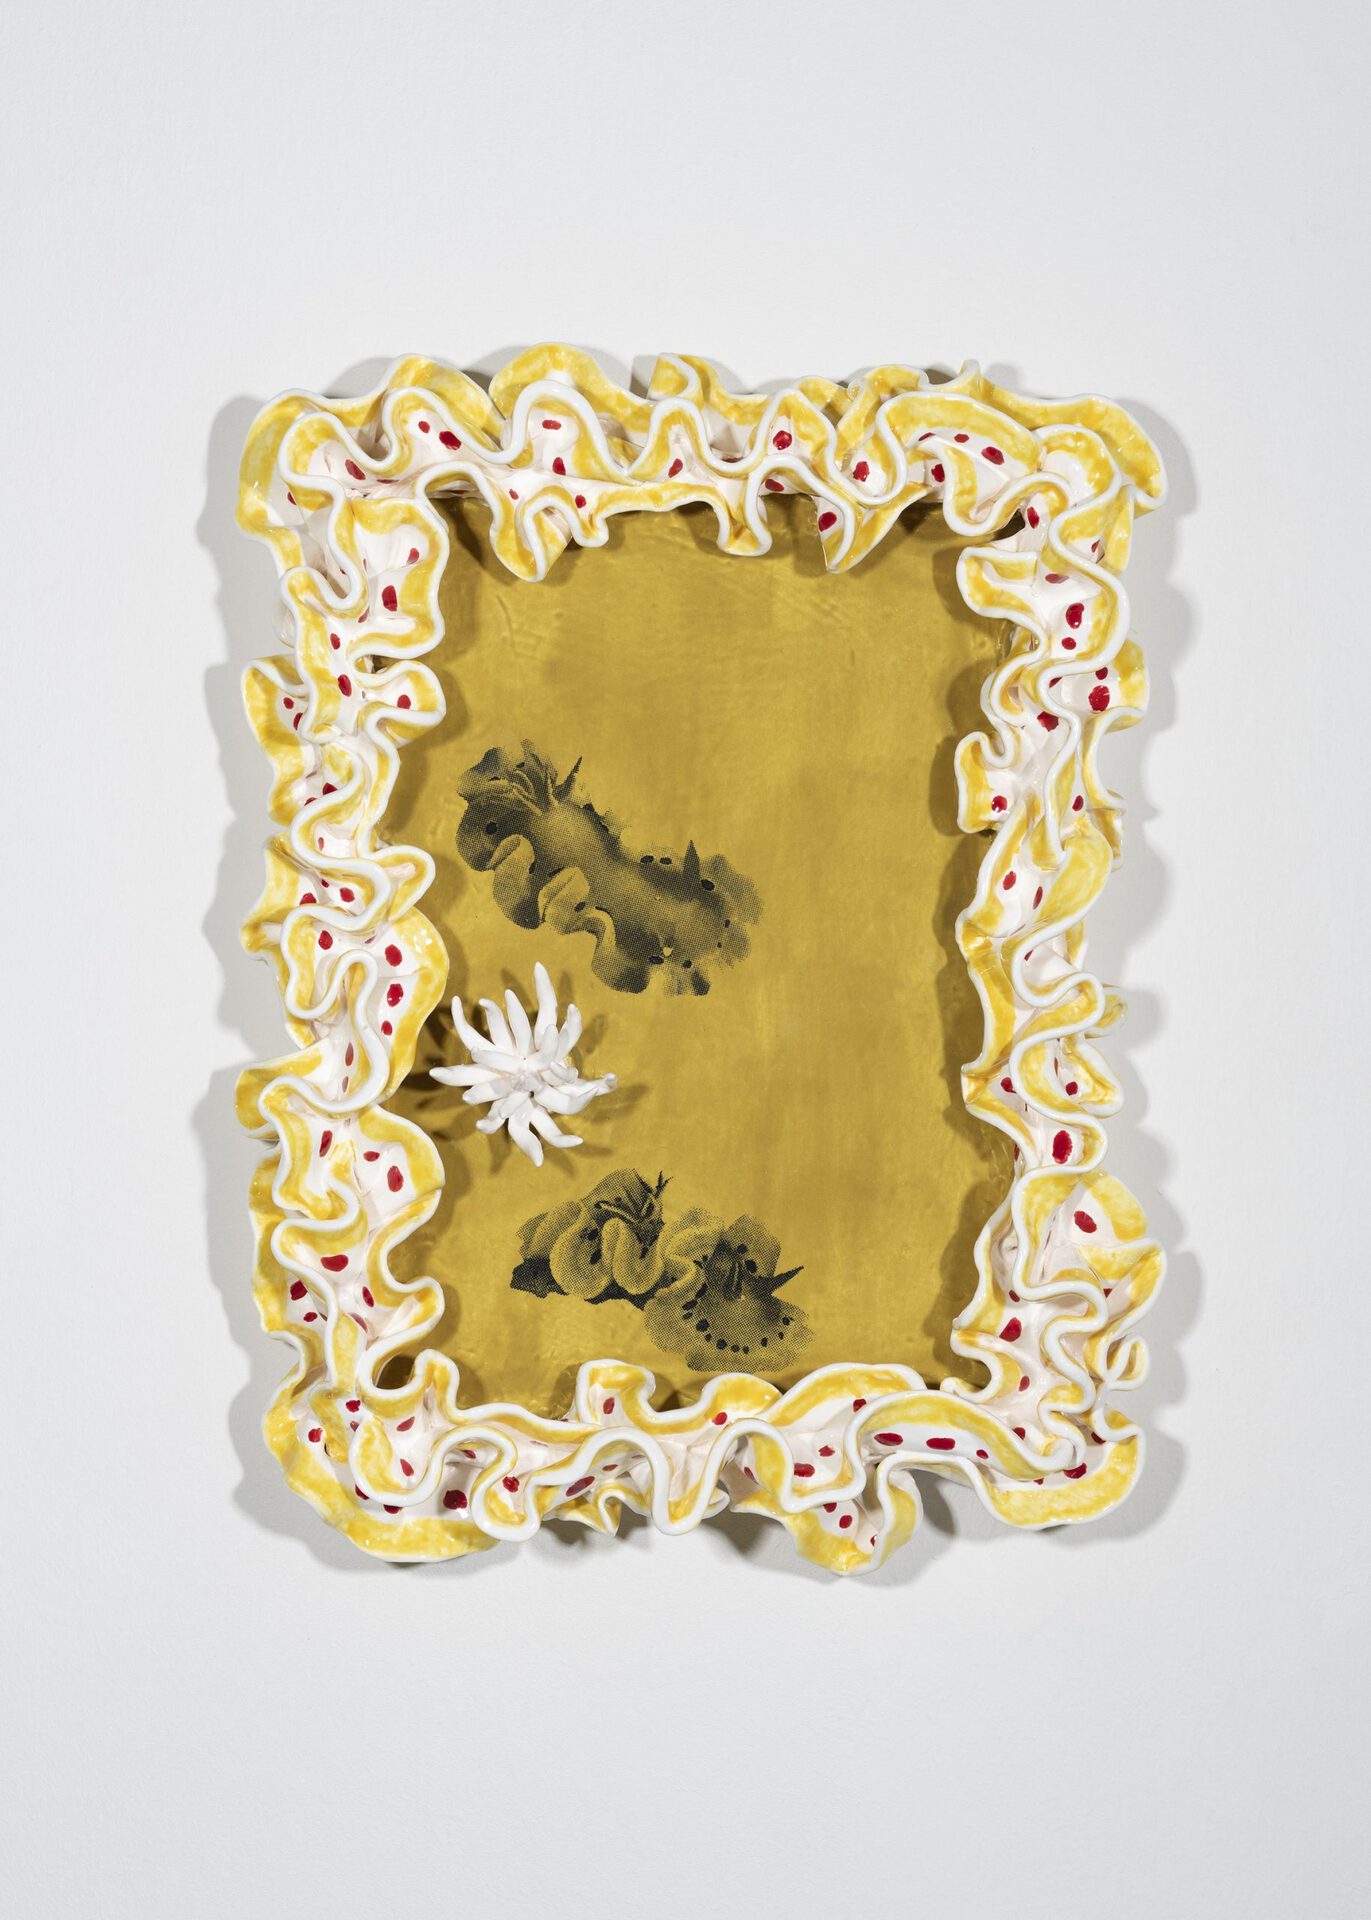 June Fischer, Ardeadoris Cruenta, 2020, Silkscreen on porcelain, 21 x 29.7 cm